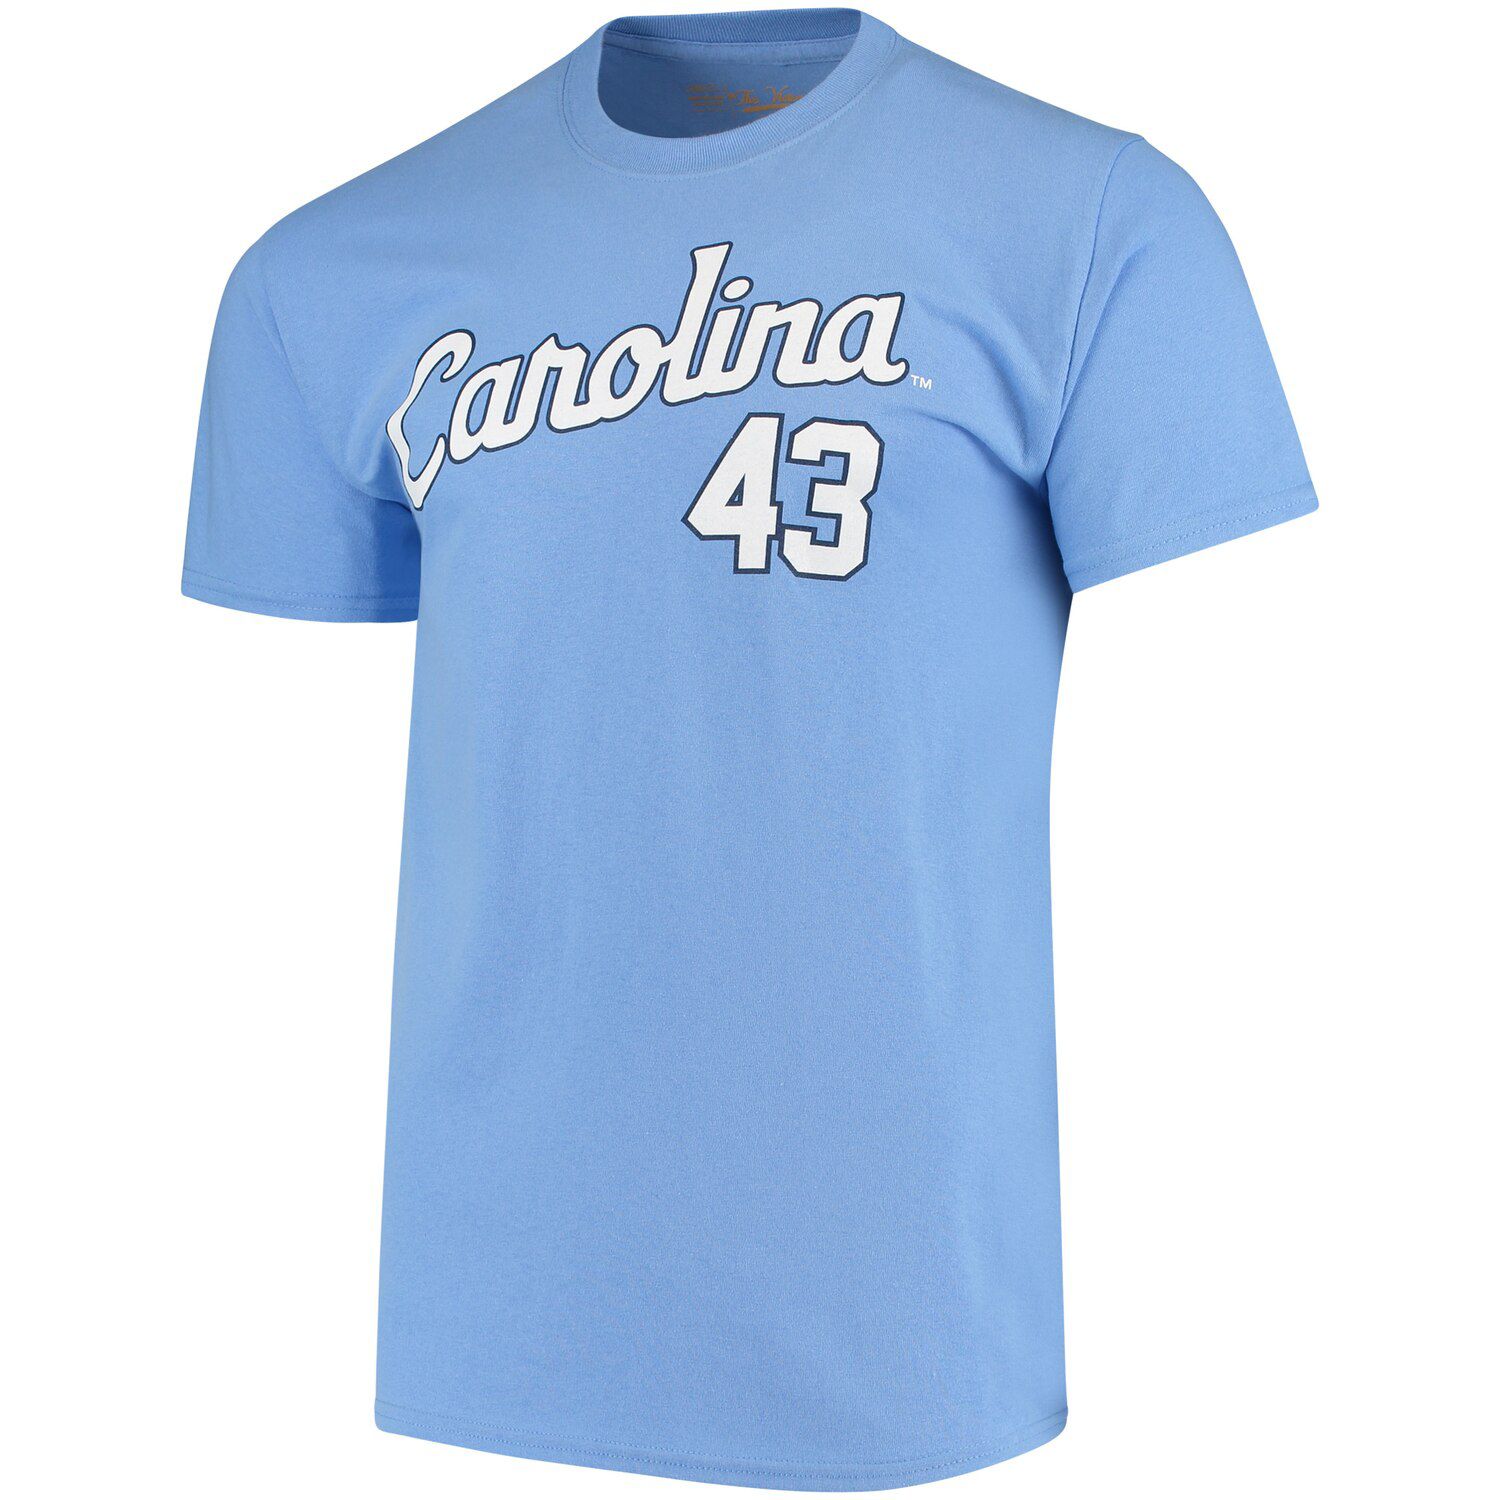 north carolina baseball shirt